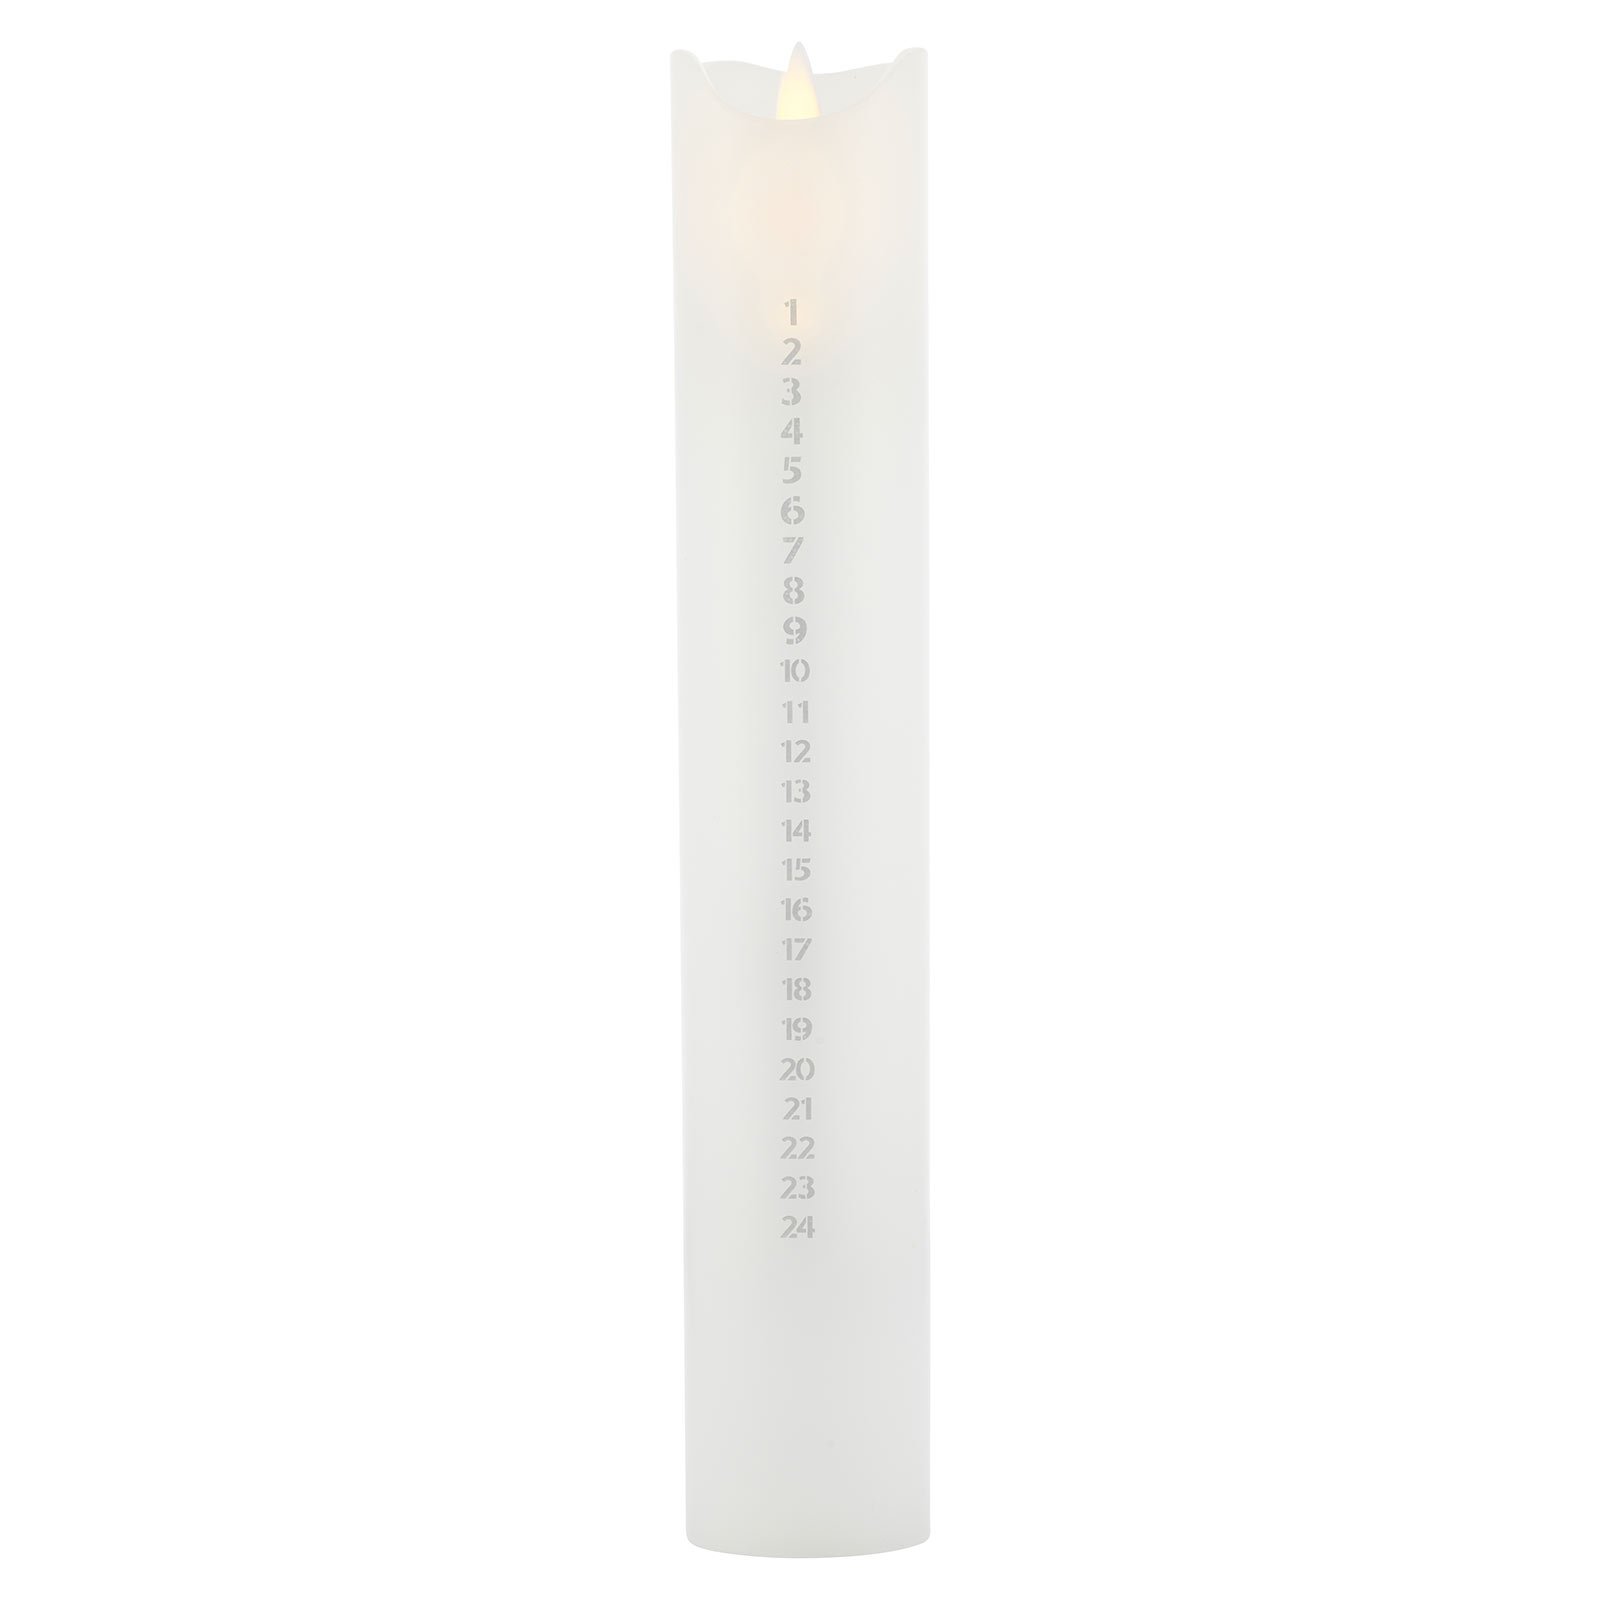 Bougie LED Sara Calendar, blanc/argent, hauteur 29 cm